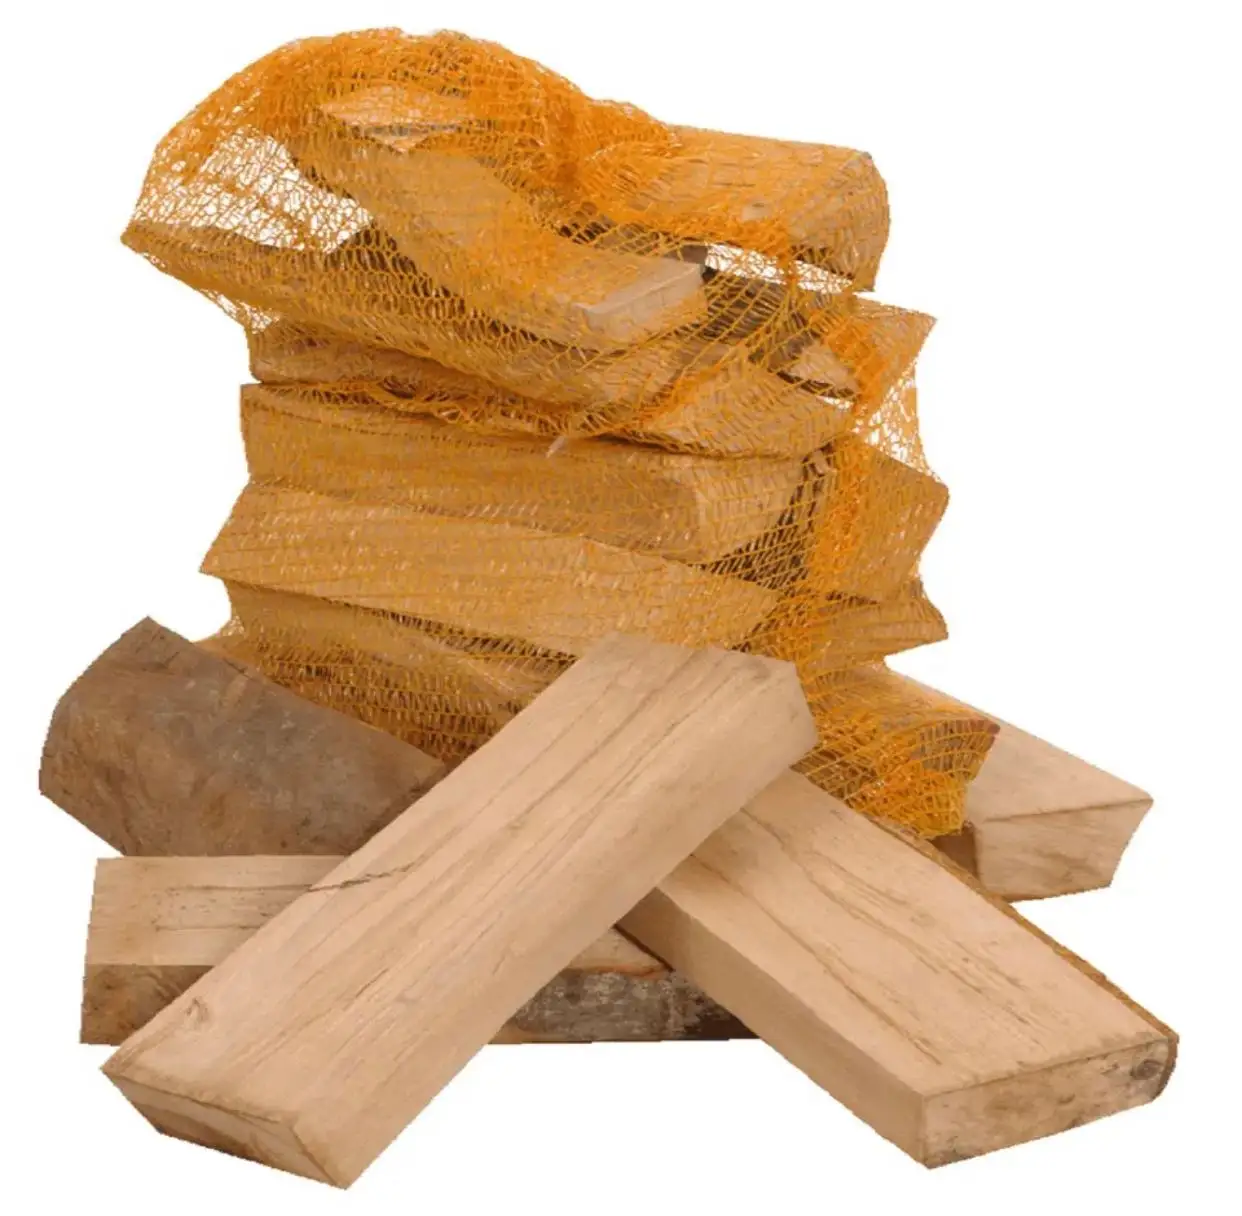 فرن حطب الزان/البلوط الجاف للحطب المجفف في أكياس خشب البلوط النار على المنصات بسعر رخيص